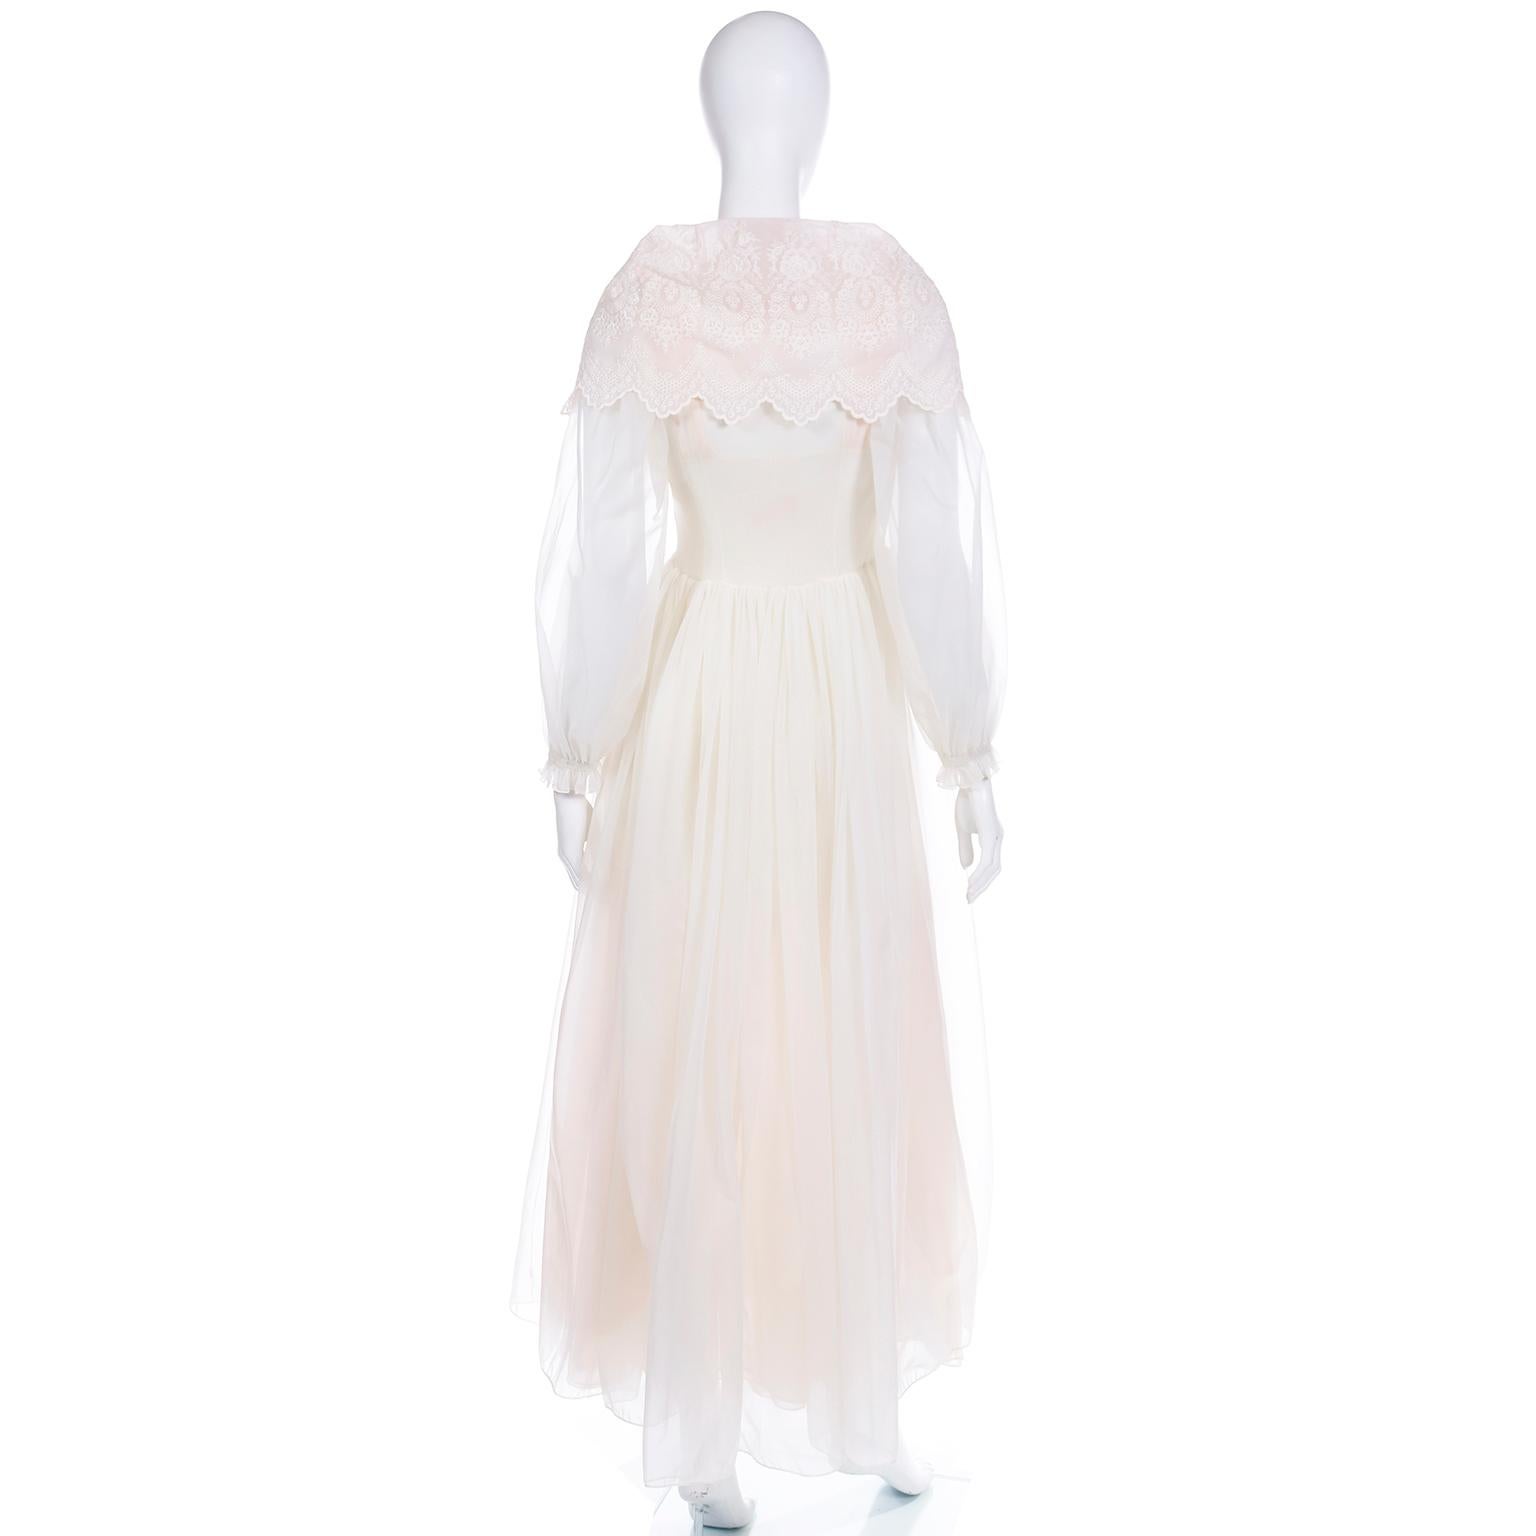 Schiaparelli 1950s Vintage Ivory & Pink Peignoir Robe & Nightgown w Eyelet Lace 3